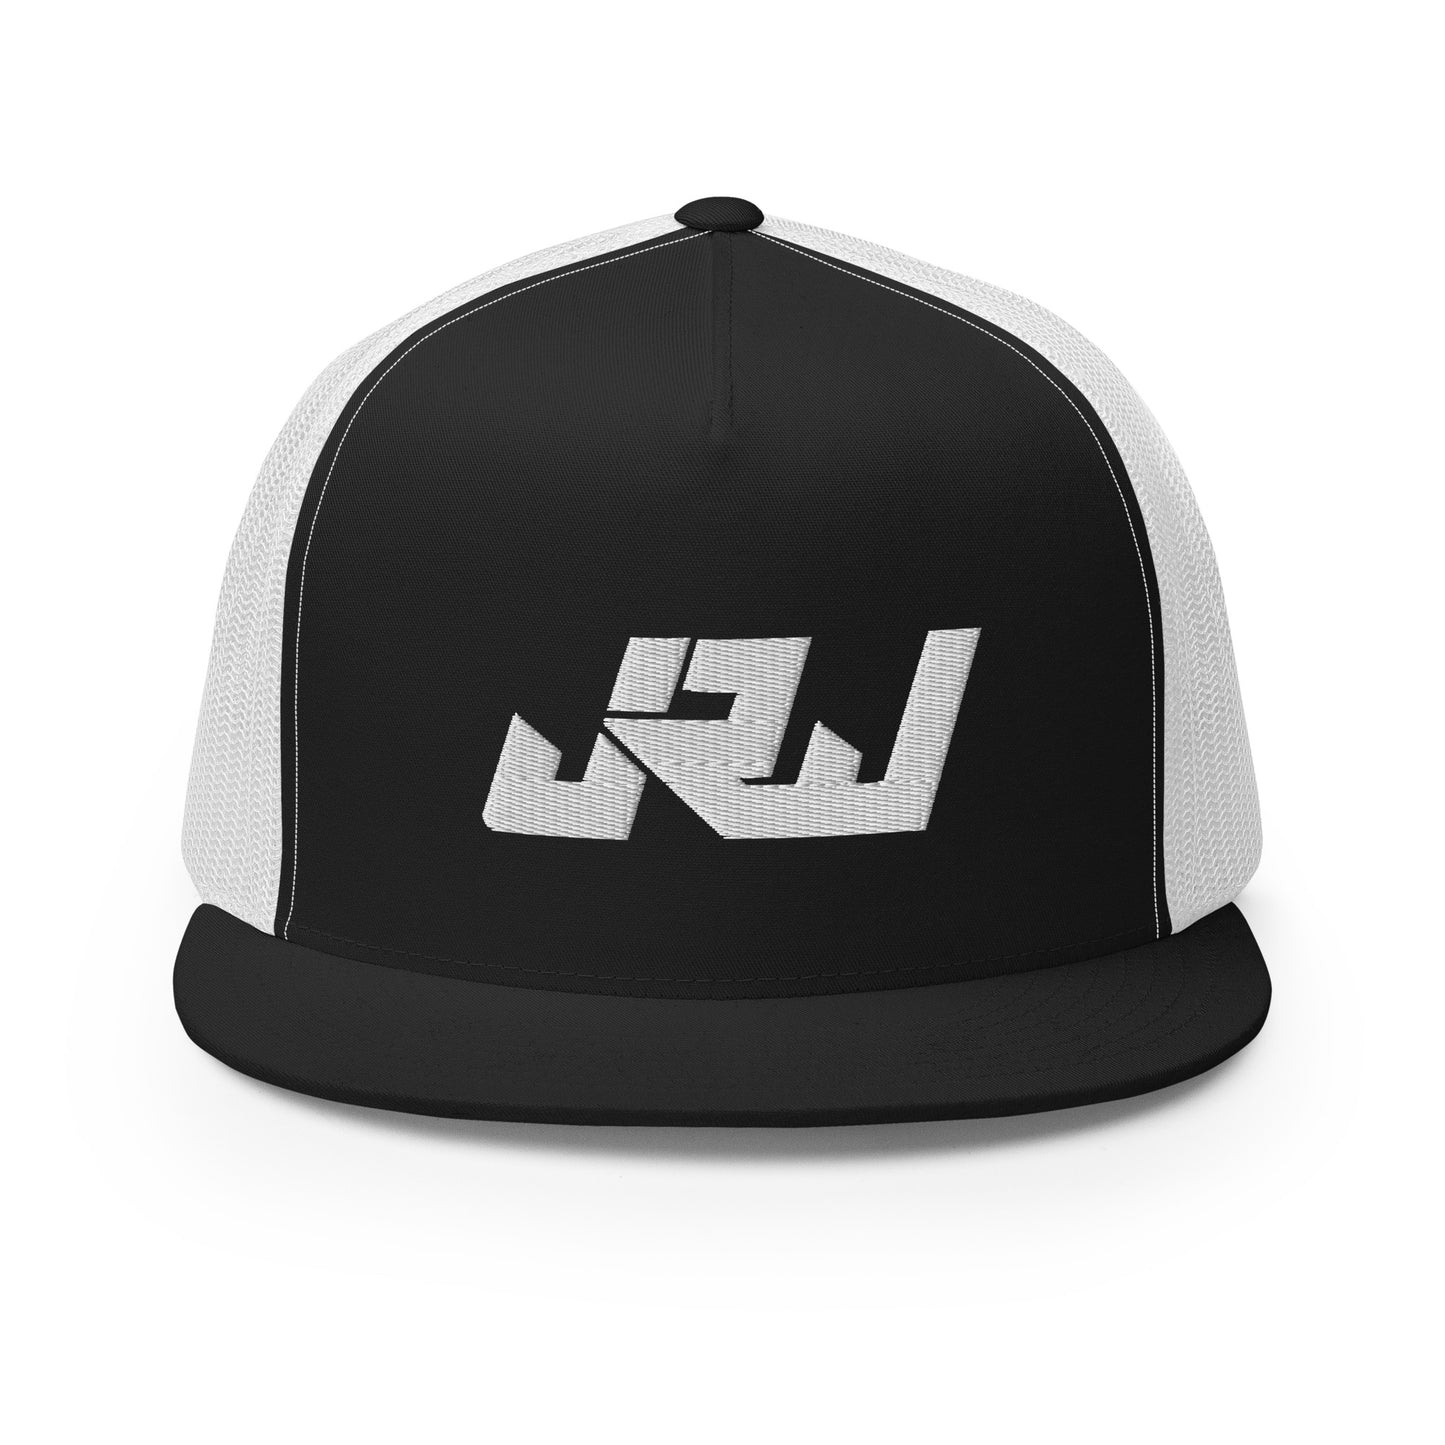 Javari Rice-Wilson "JRW" Trucker Cap